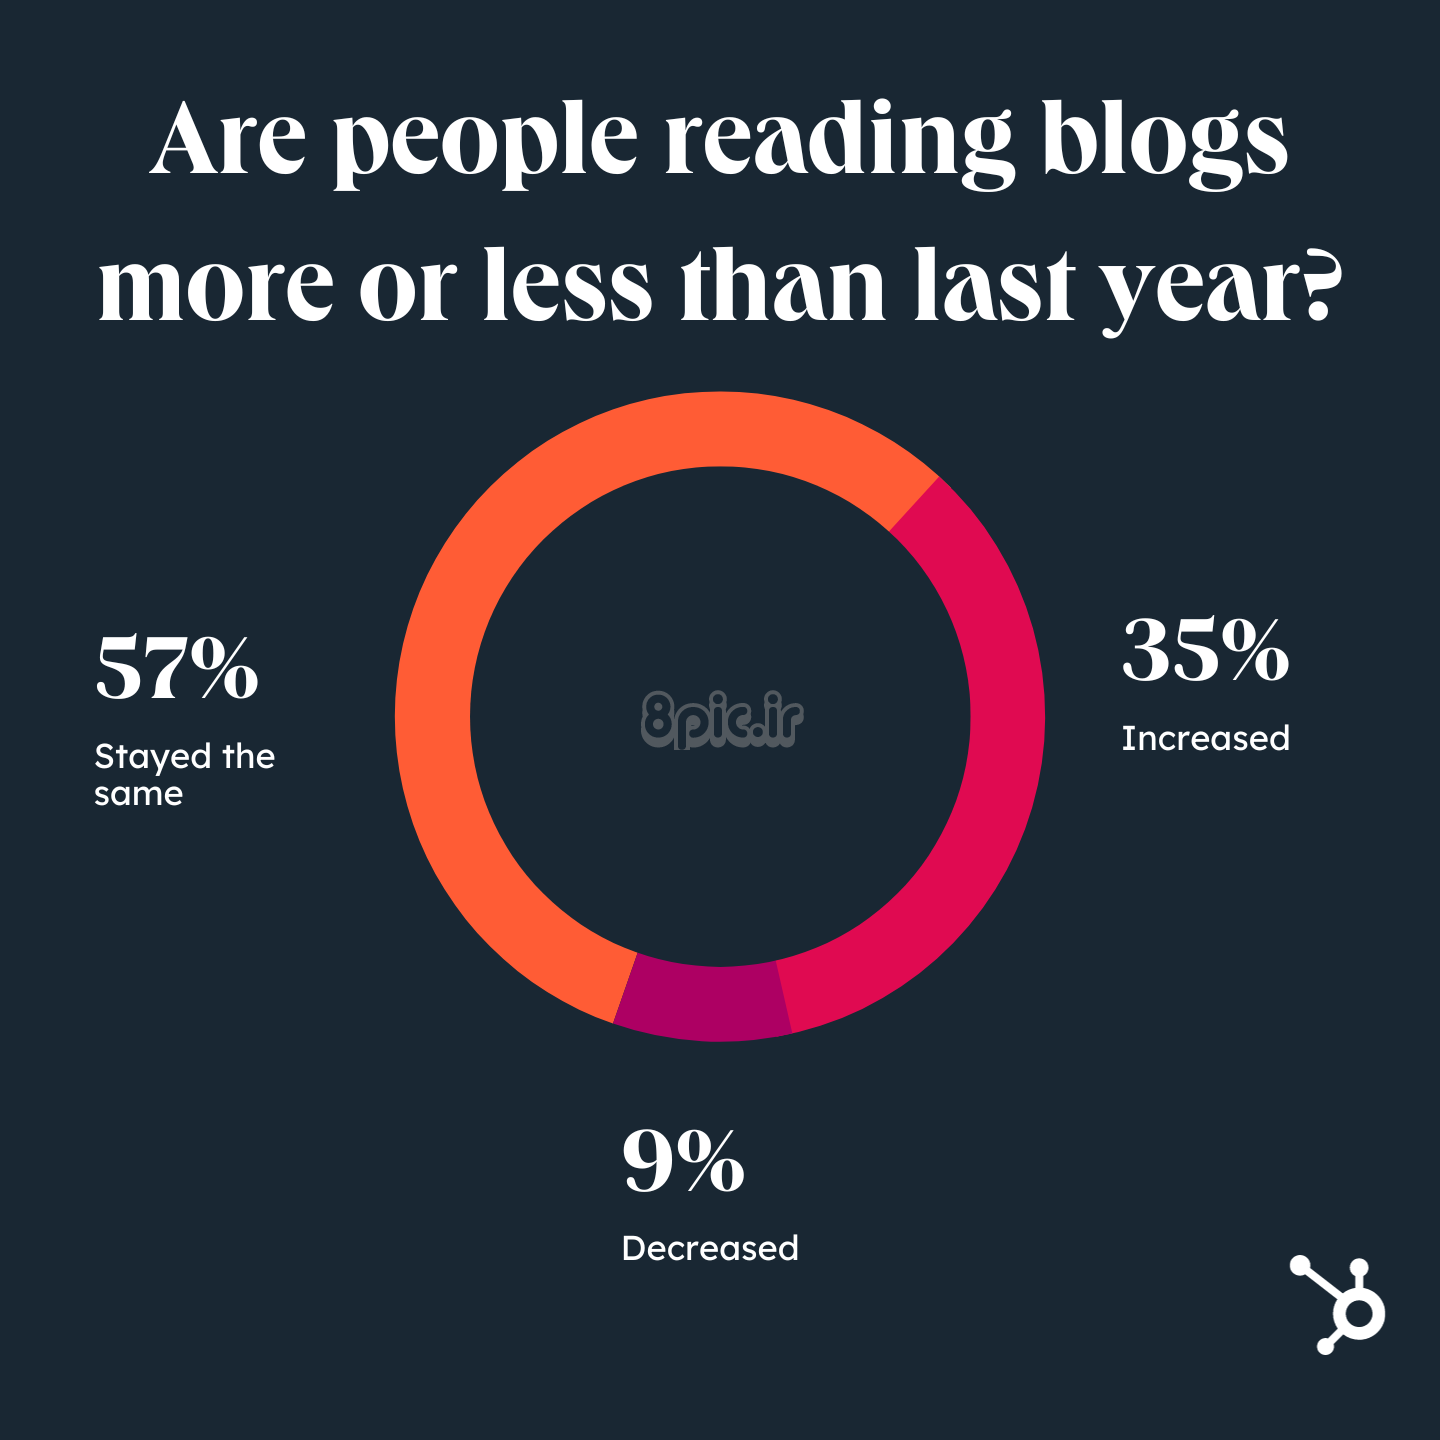 آیا مردم پست های وبلاگ را بیشتر از سال گذشته می خوانند یا کمتر؟ آیا مردم هنوز وبلاگ می خوانند؟